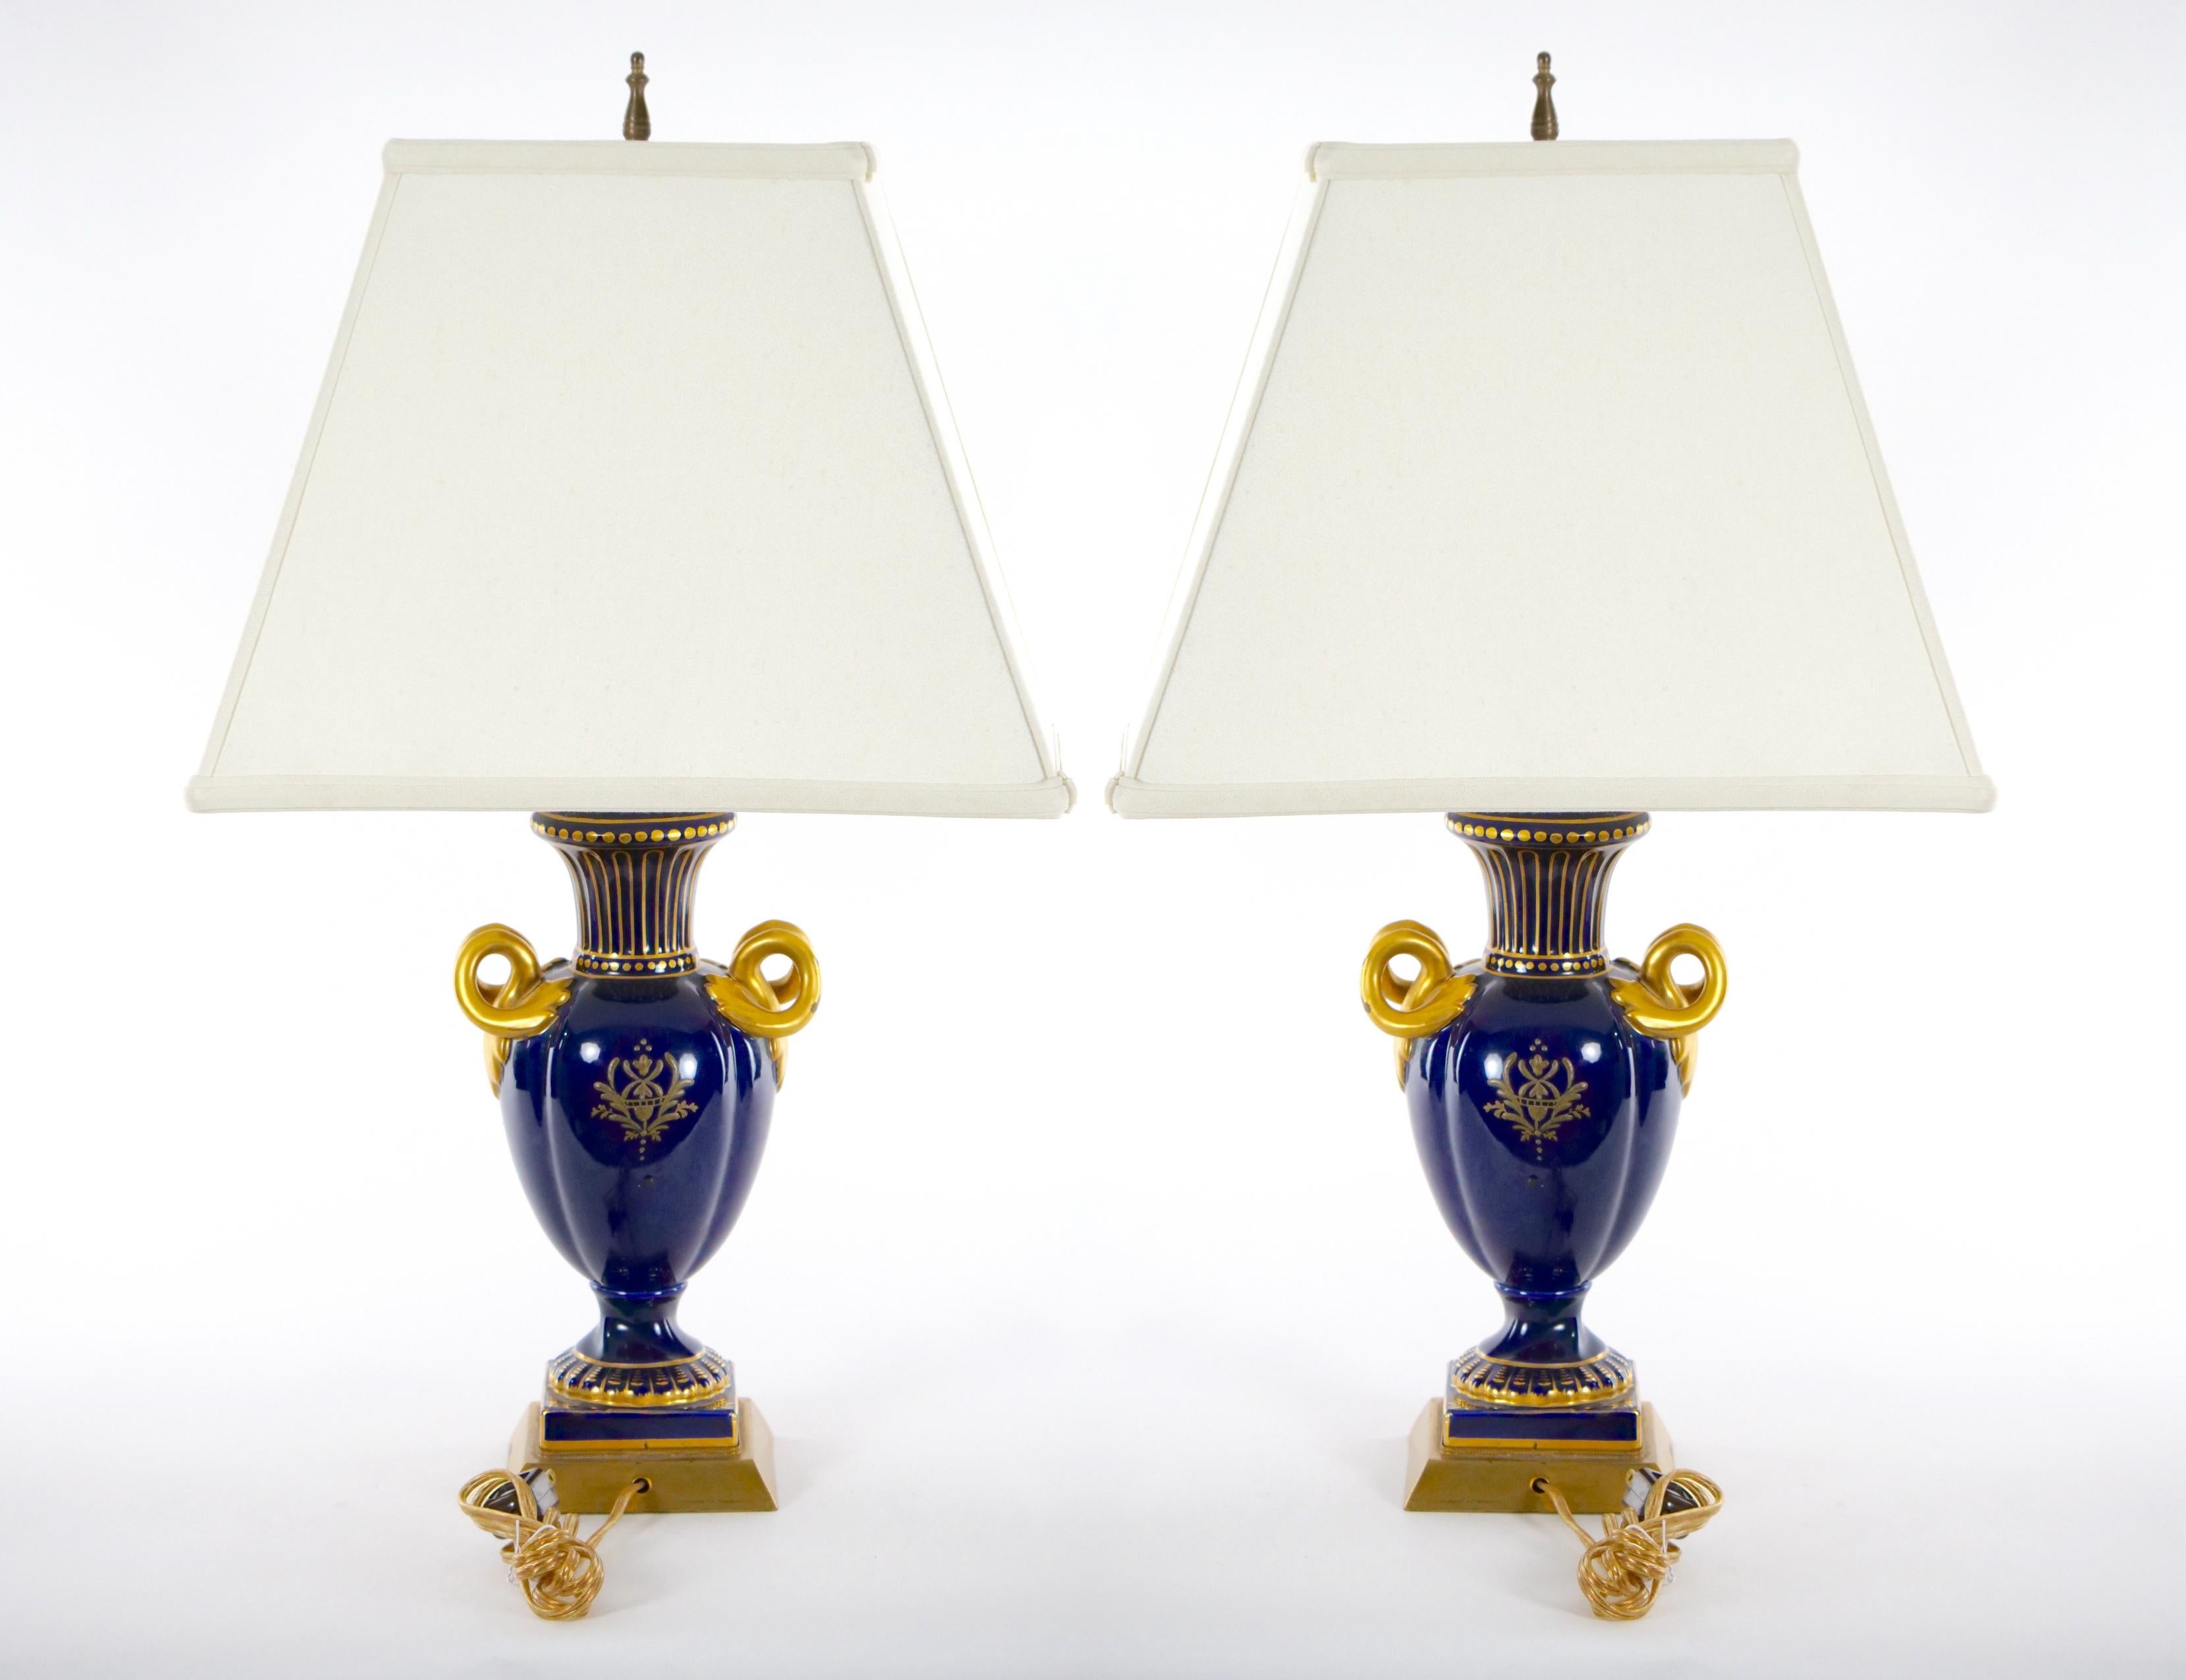 Anfang des 20. Jahrhunderts Louis XVI-Stil Französisch Porzellan und Hand vergoldet dekoriert Urne Form Vase Paar Tischlampe. Jede Lampe zeigt auf einer Seite eine gemalte Hirtenszene  dekoriertes Design. Die Rückseite ist vergoldet und mit einem